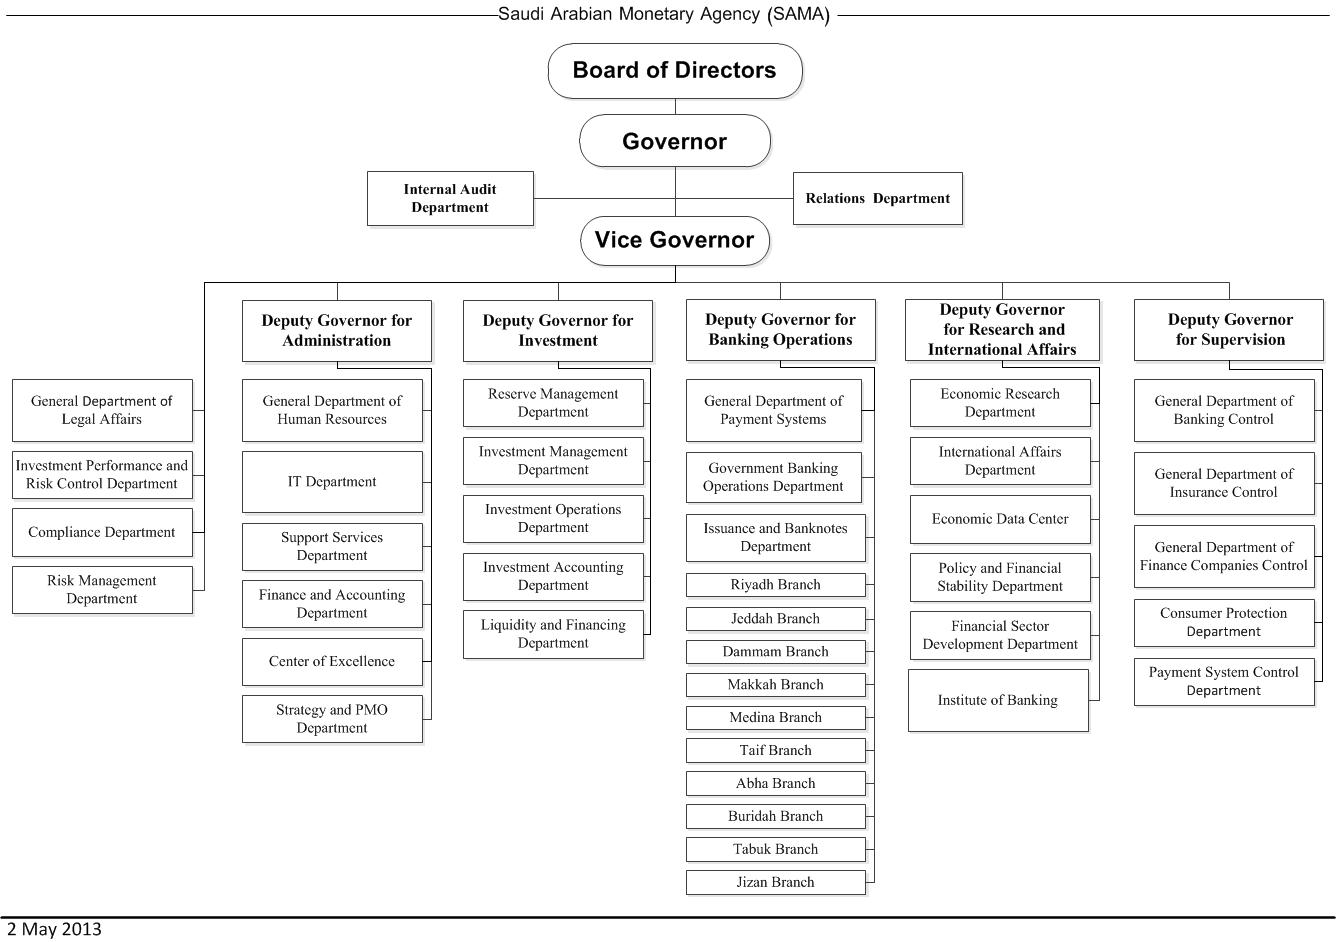 Compliance Department Organizational Chart